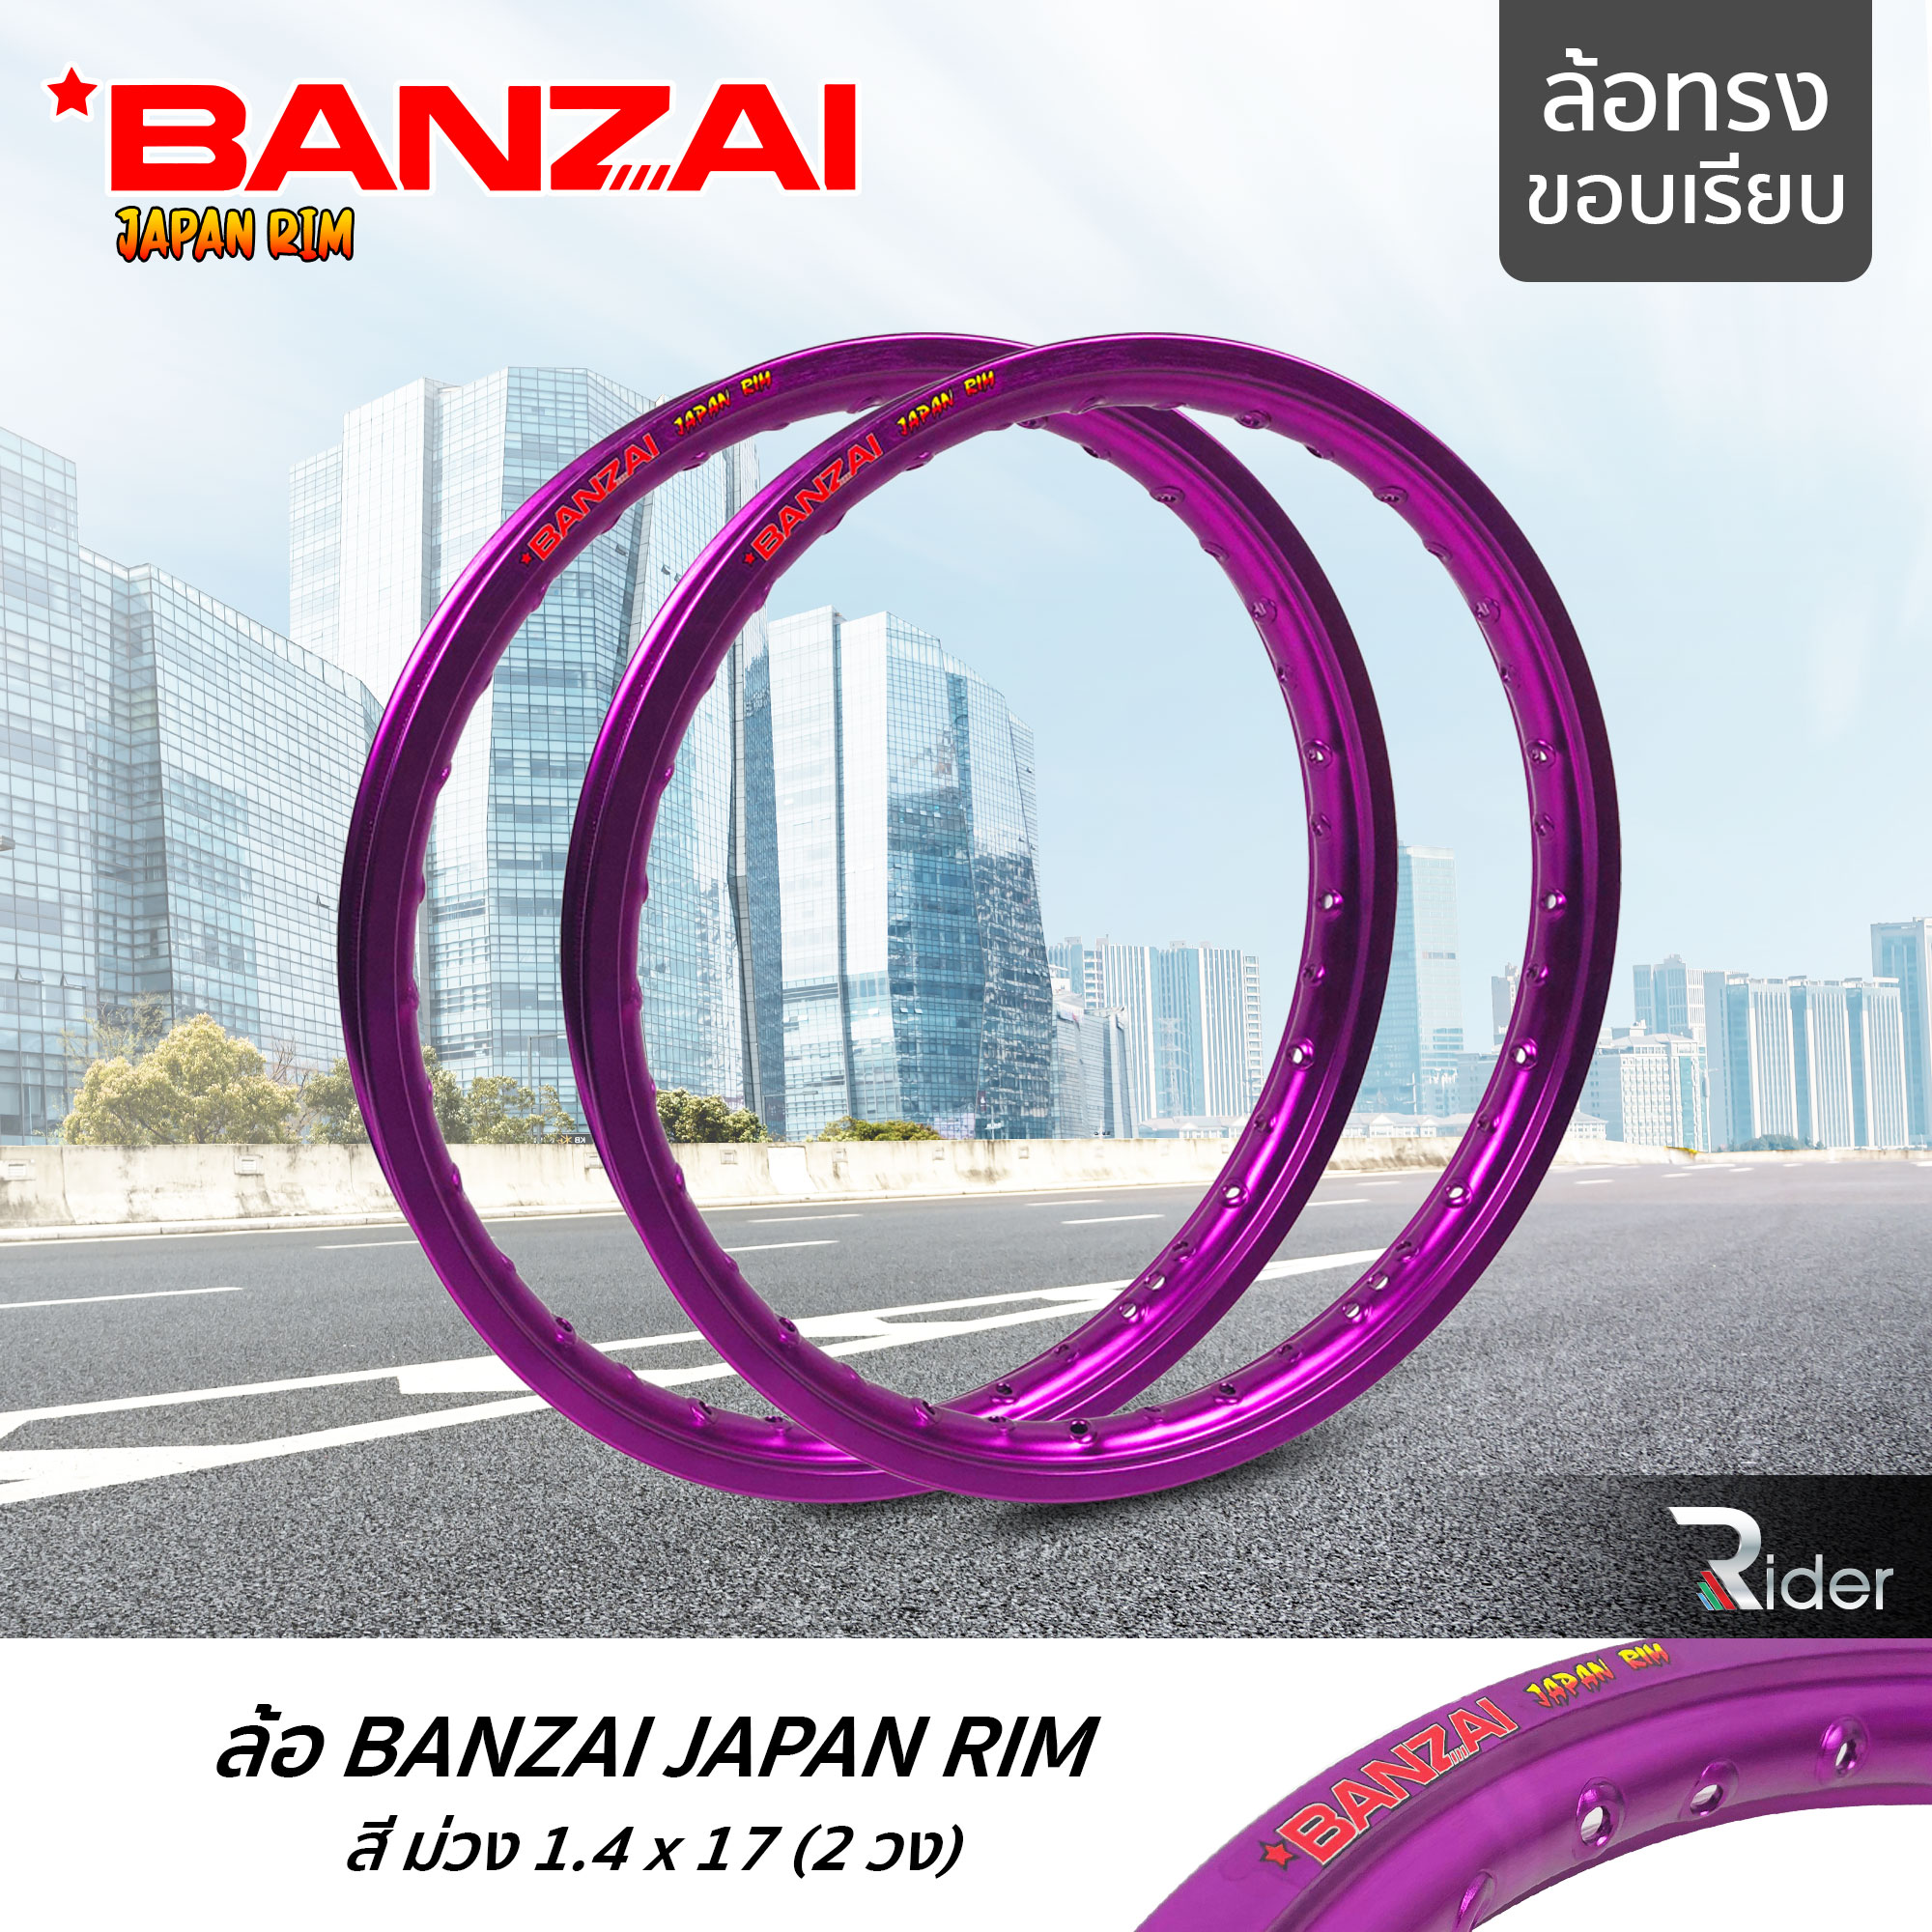 BANZAI ล้อขอบ 17 บันไซ รุ่น JAPAN RIM 1.4 ขอบ17 นิ้ว ล้อทรงขอบเรียบ แพ็คคู่ 2 วง วัสดุอลูมิเนียม ของแท้ รถจักรยานยนต์ สี ม่วง